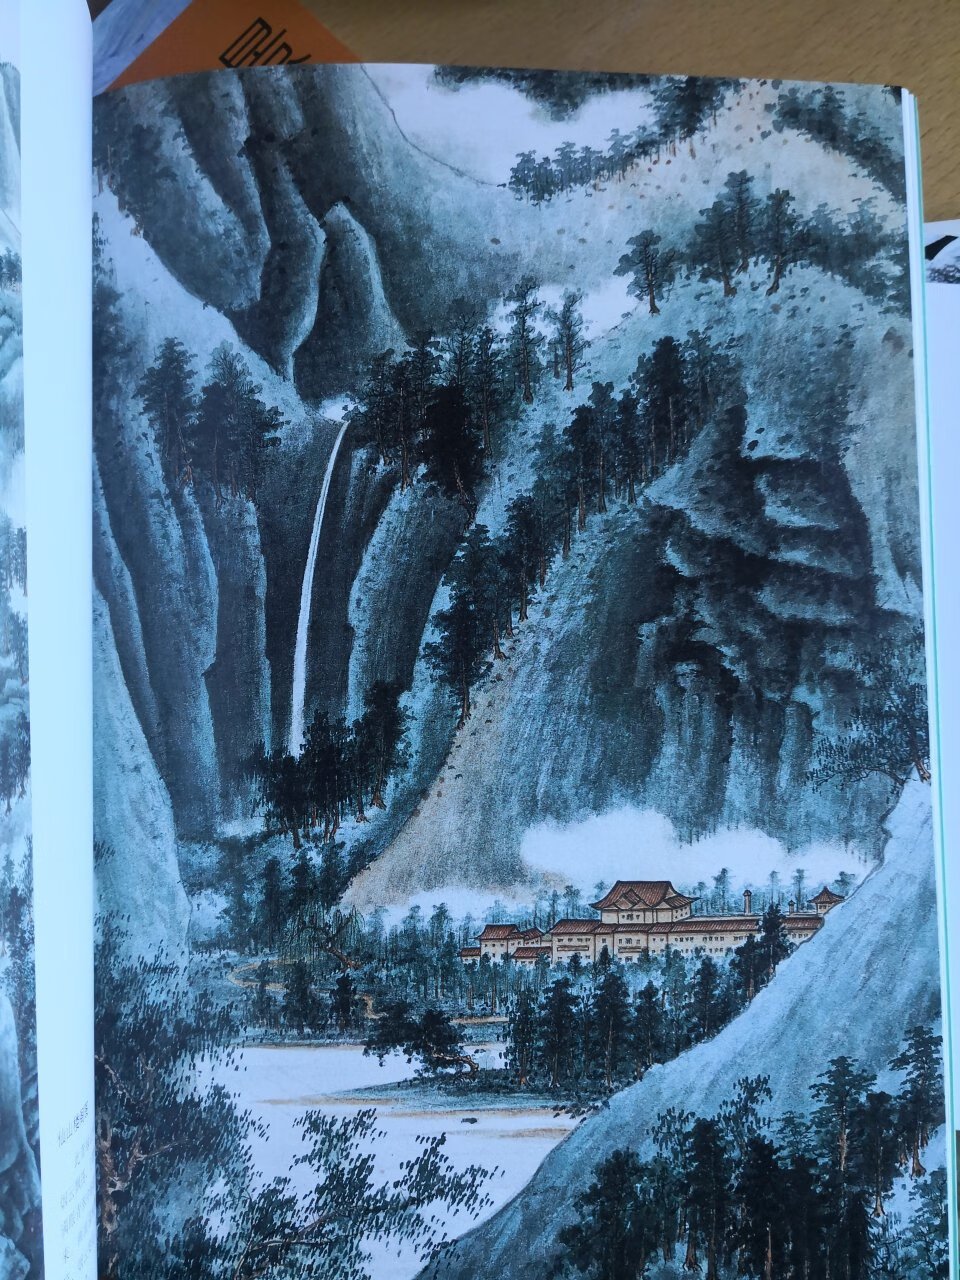 谢稚柳是我国现代著名山水画家，绘画艺术性很高，此册印刷很清晰一版一印，是不可多得之范本，纸张很好，为大的出版社出版可靠，服务一流。